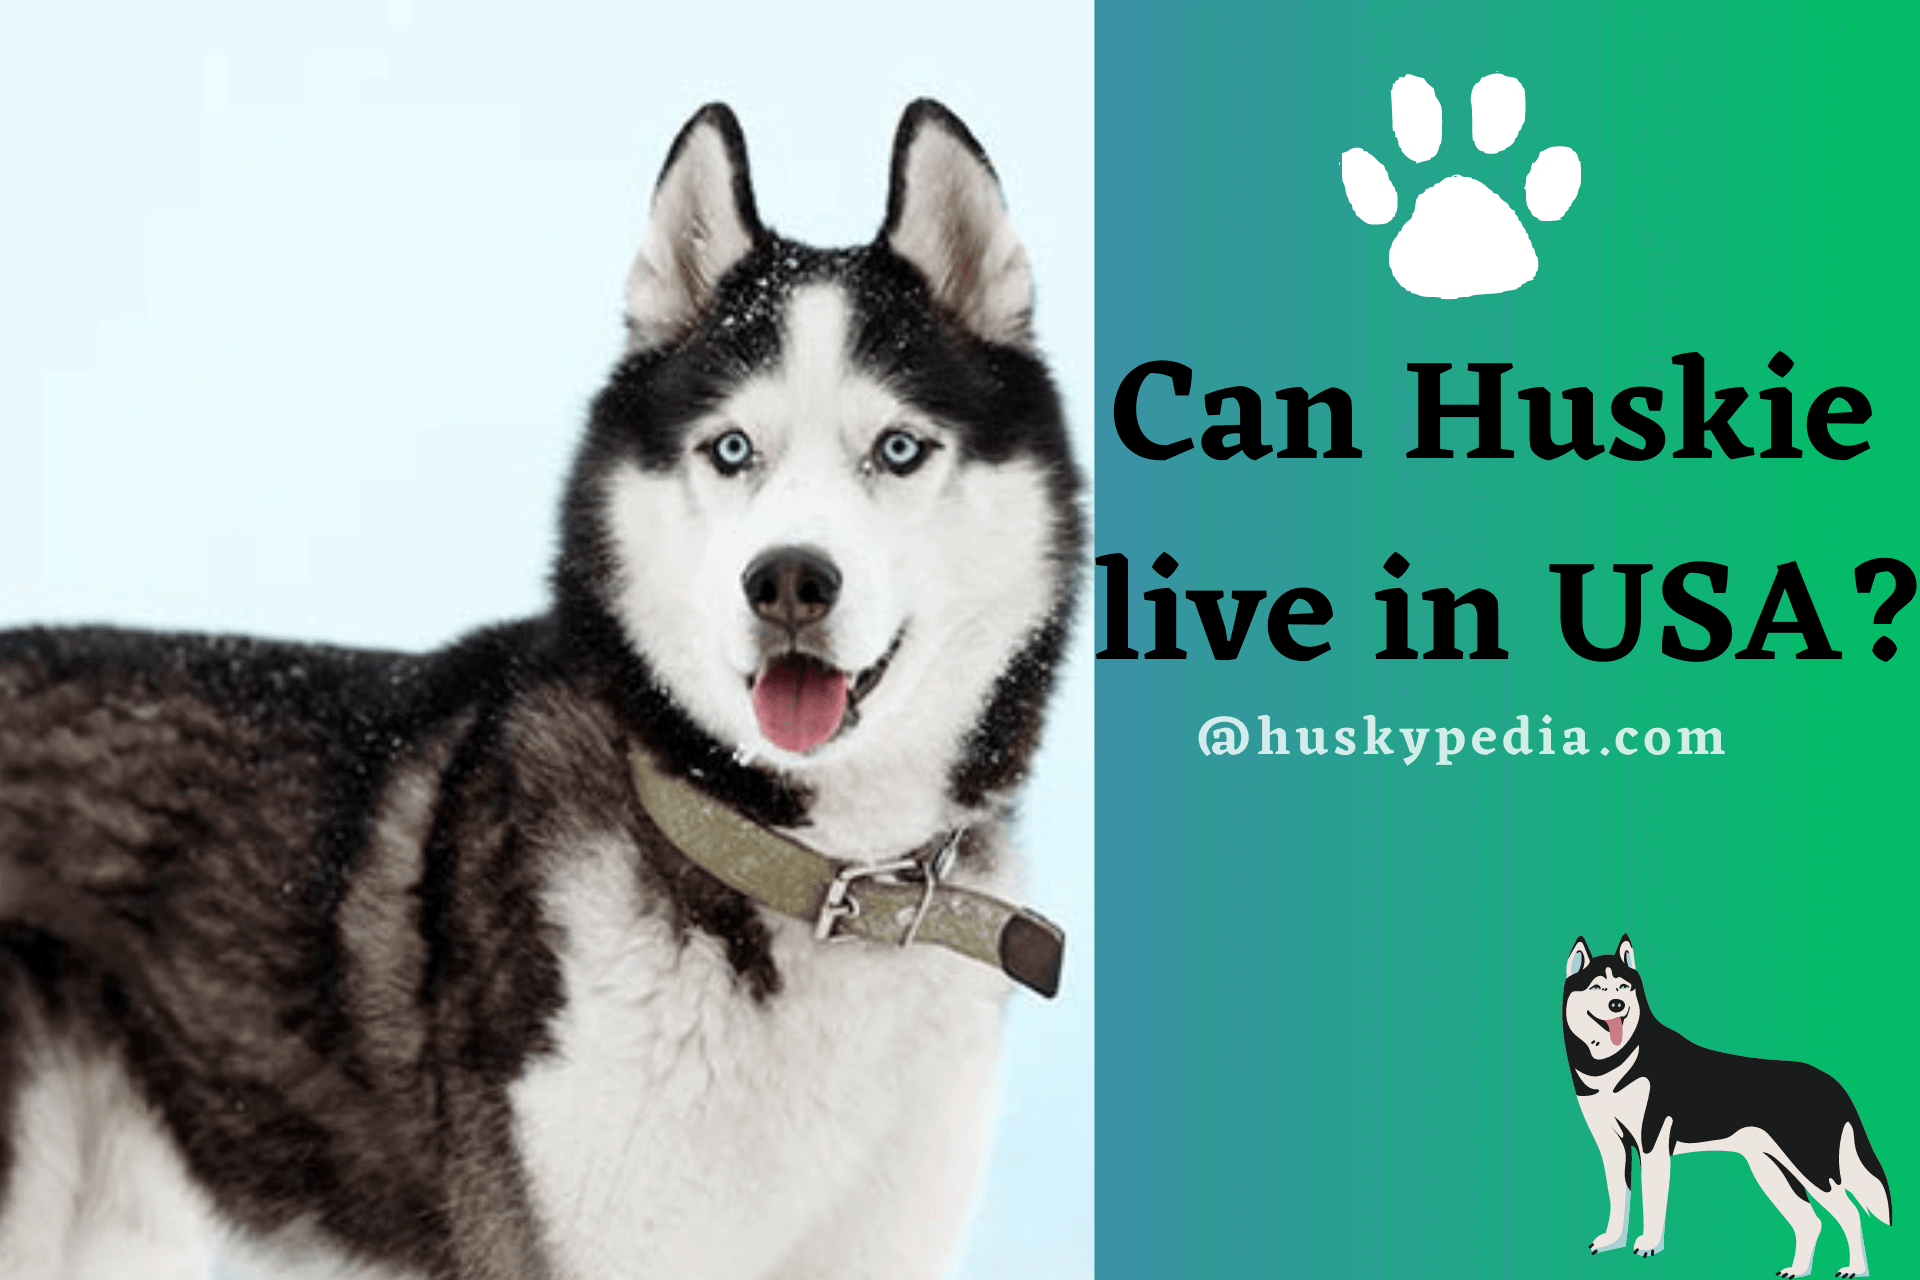 Husky live in USA